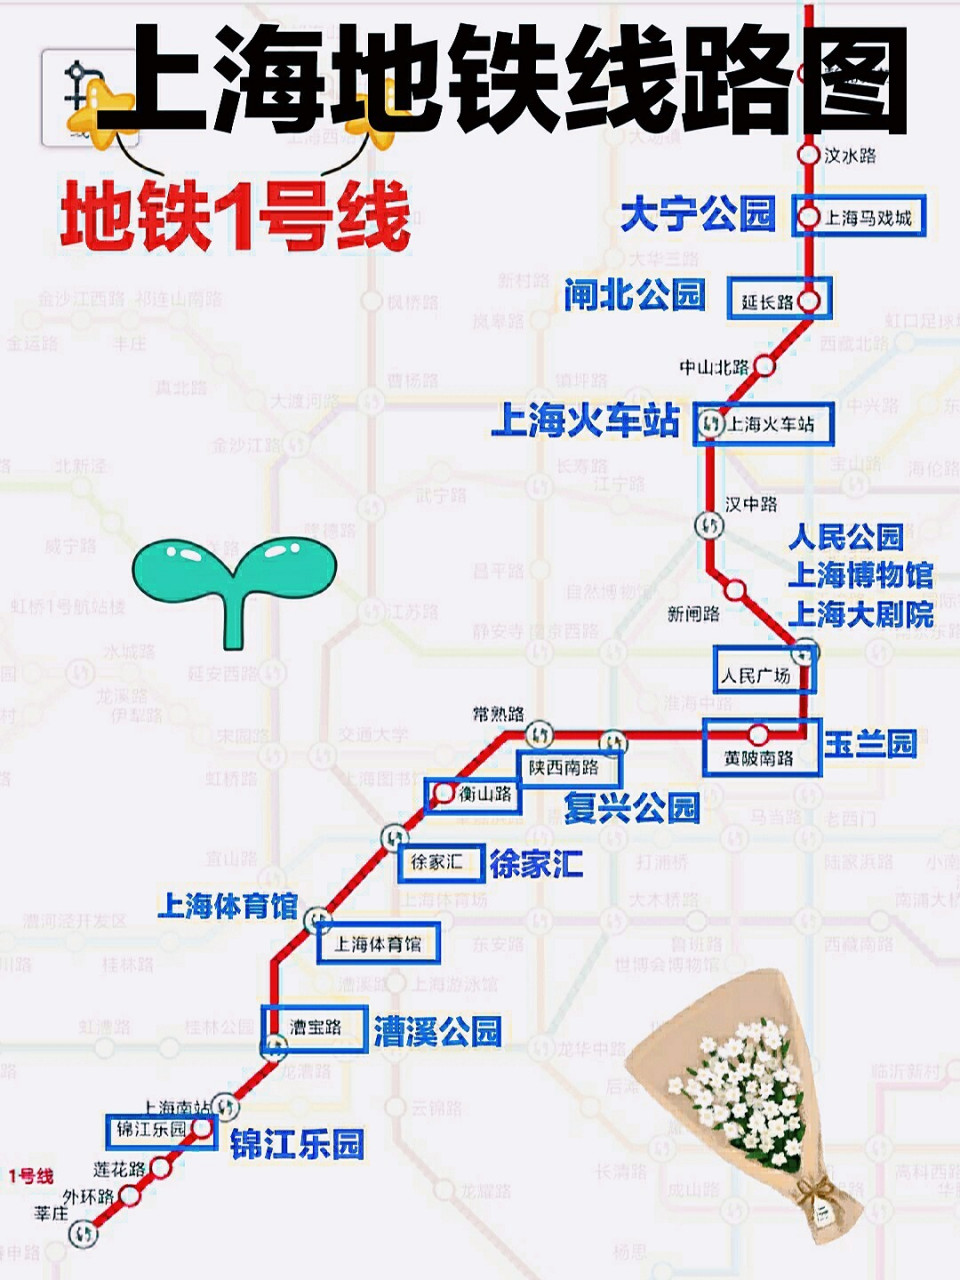 上海18号地铁沿线景点图片